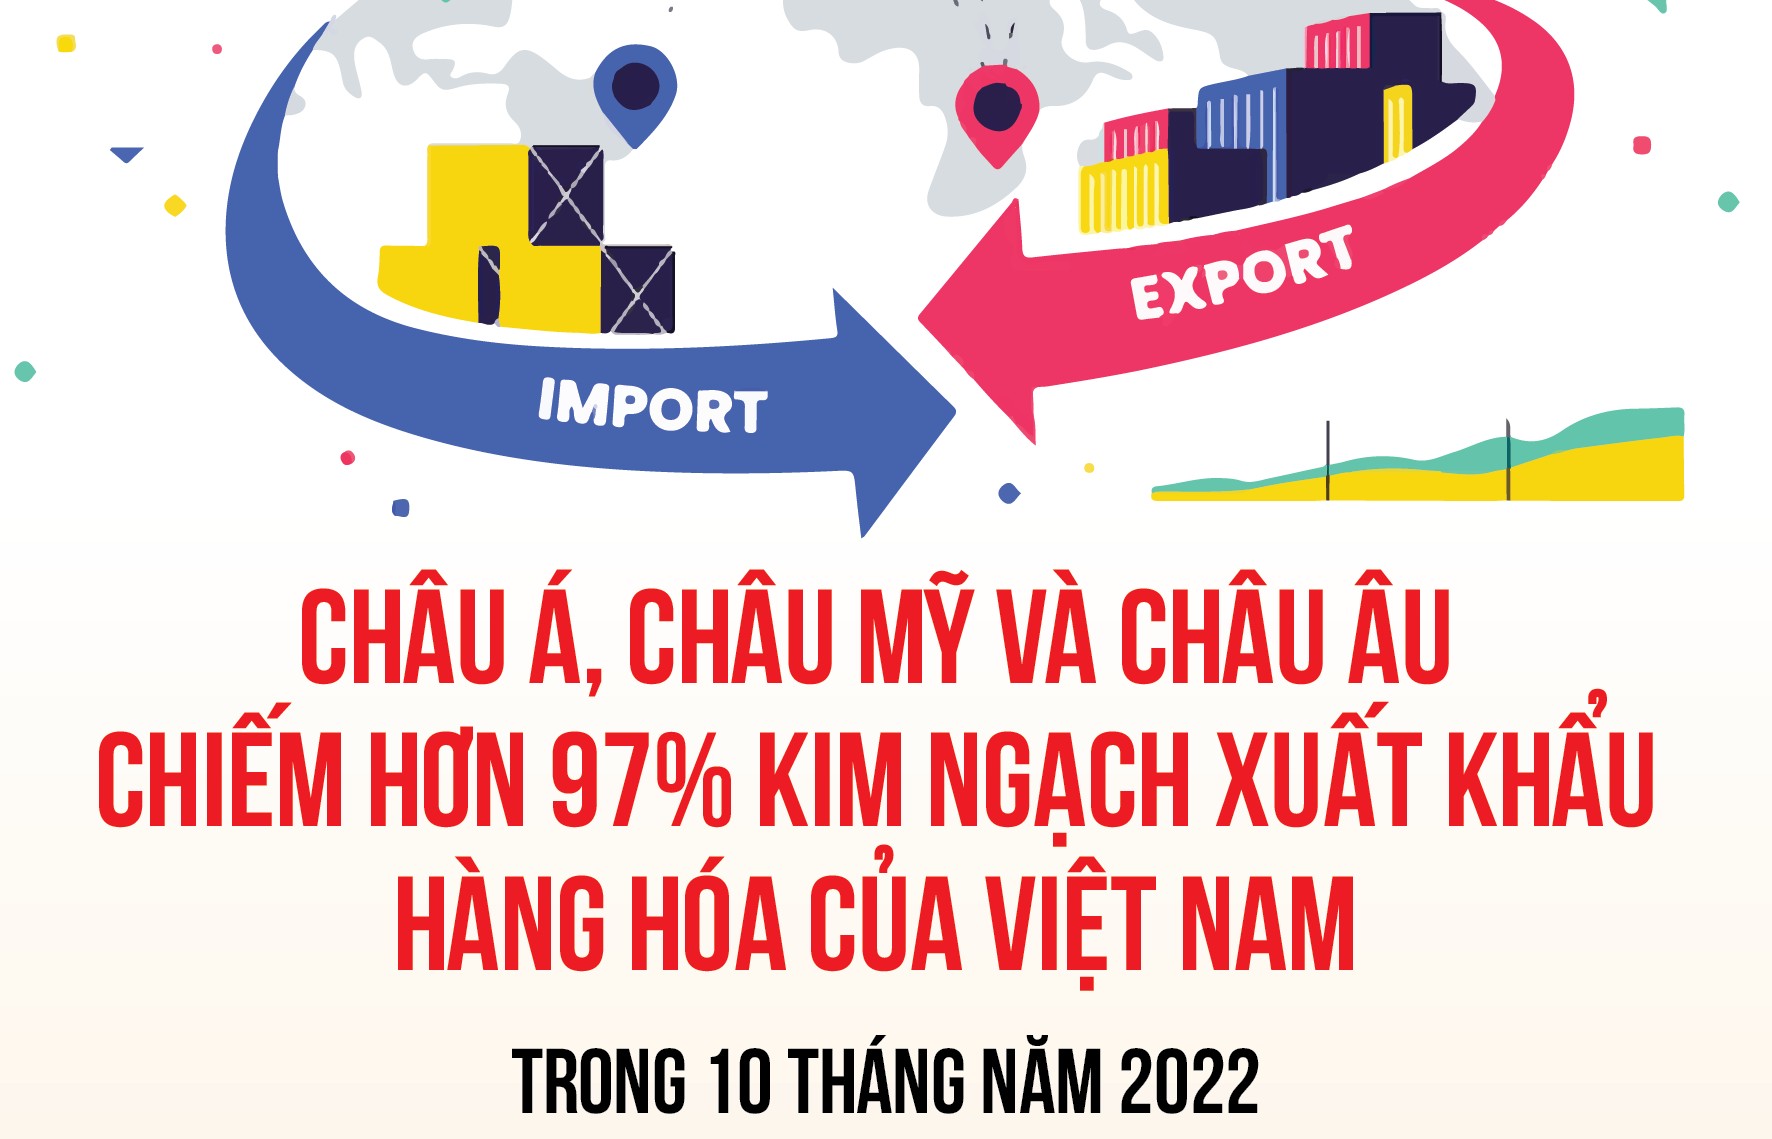 Hơn 97% kim ngạch xuất khẩu hàng hóa của Việt Nam tập trung ở châu Á, châu Mỹ và châu Âu